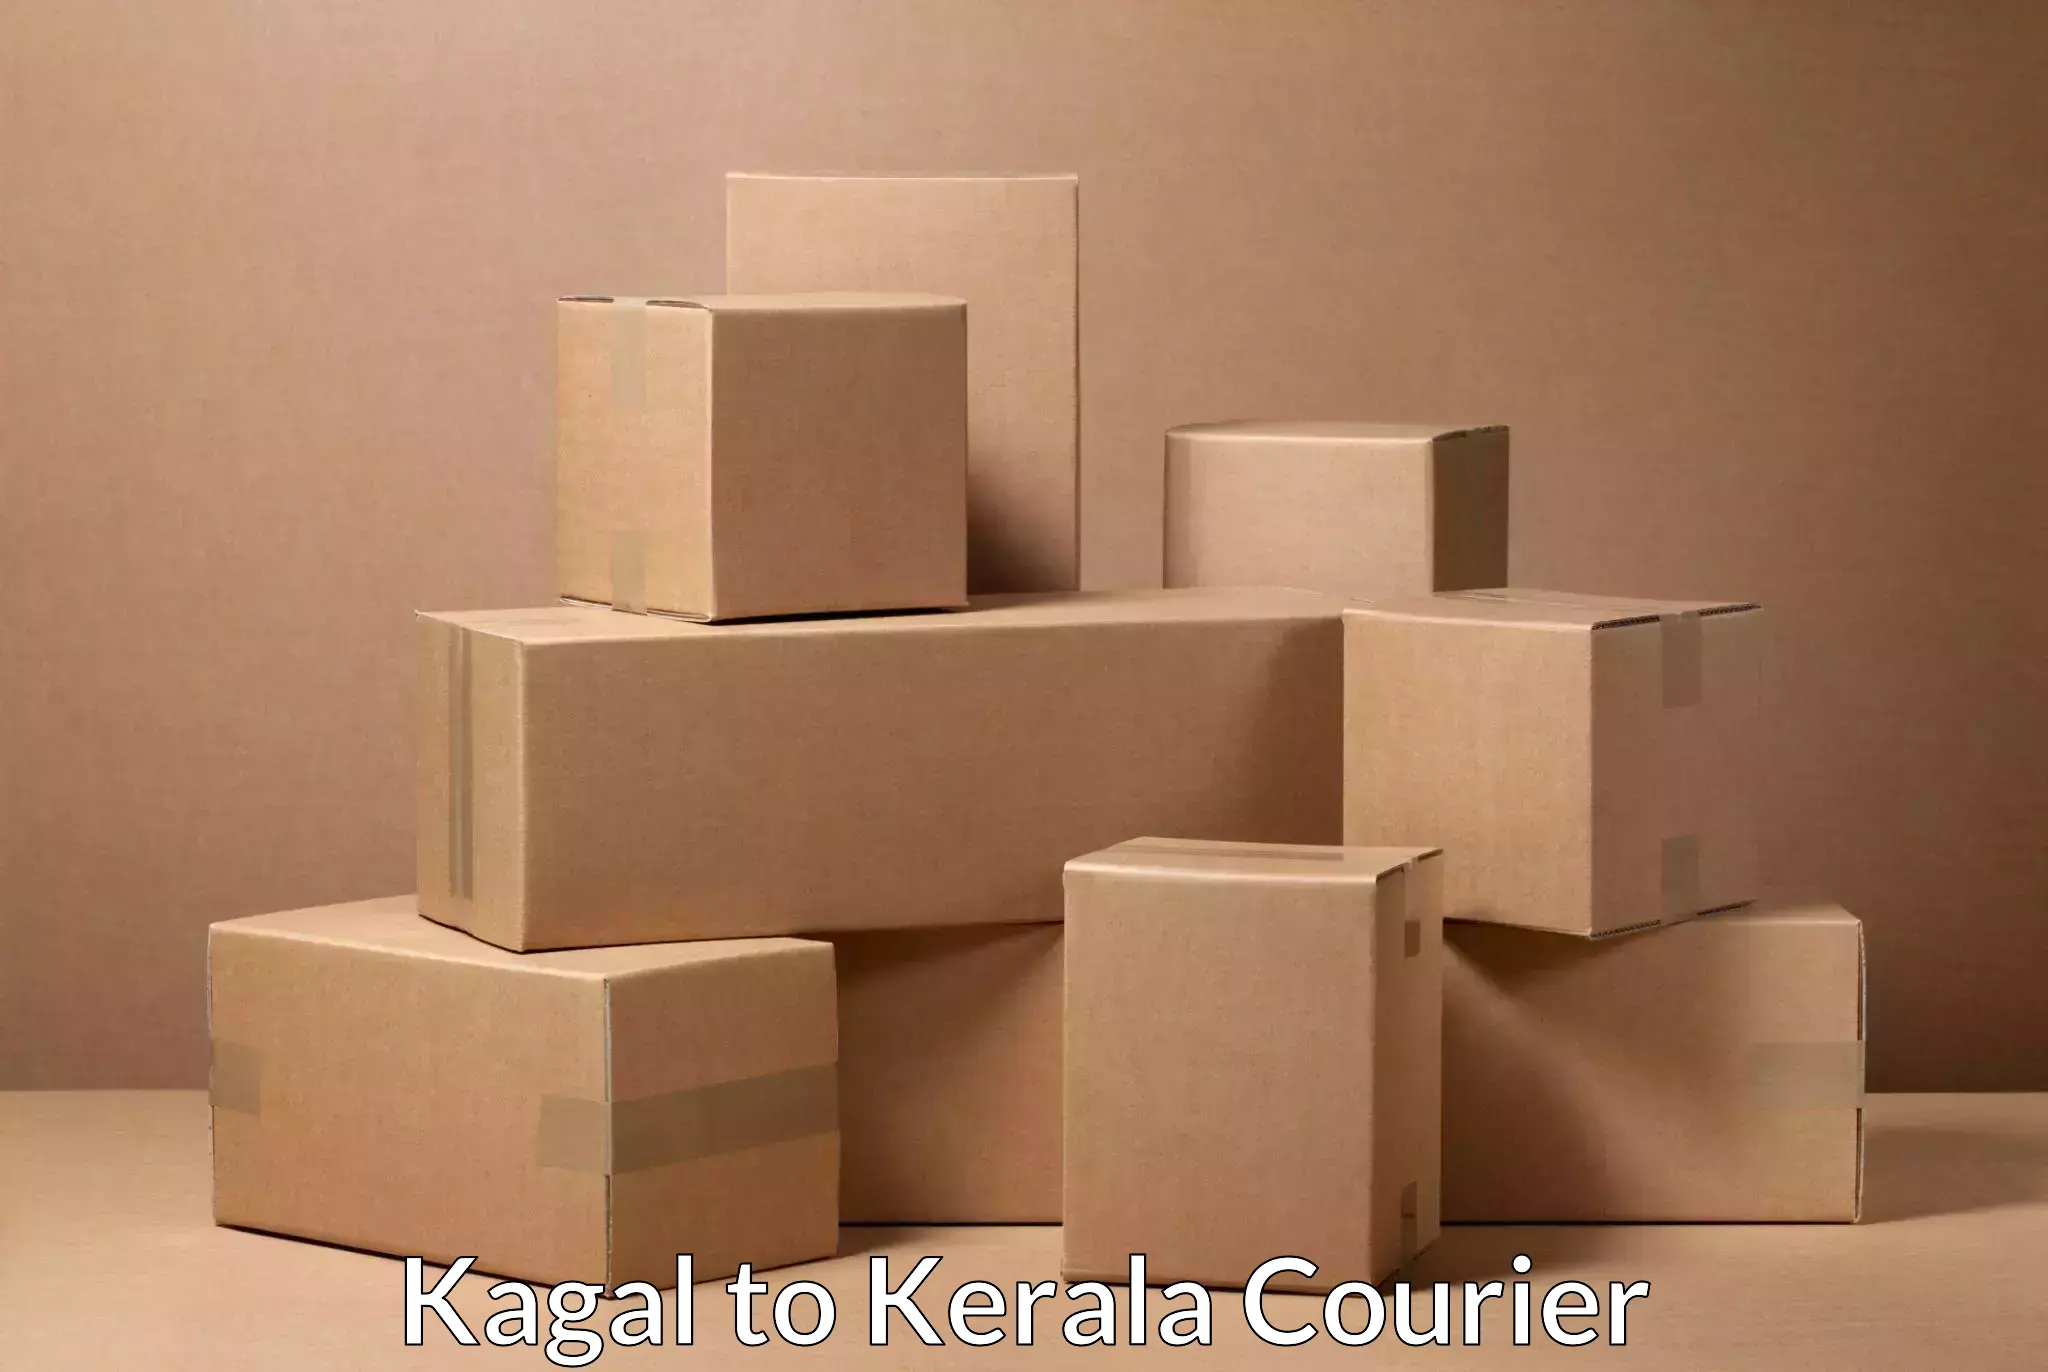 Express package handling Kagal to Kerala